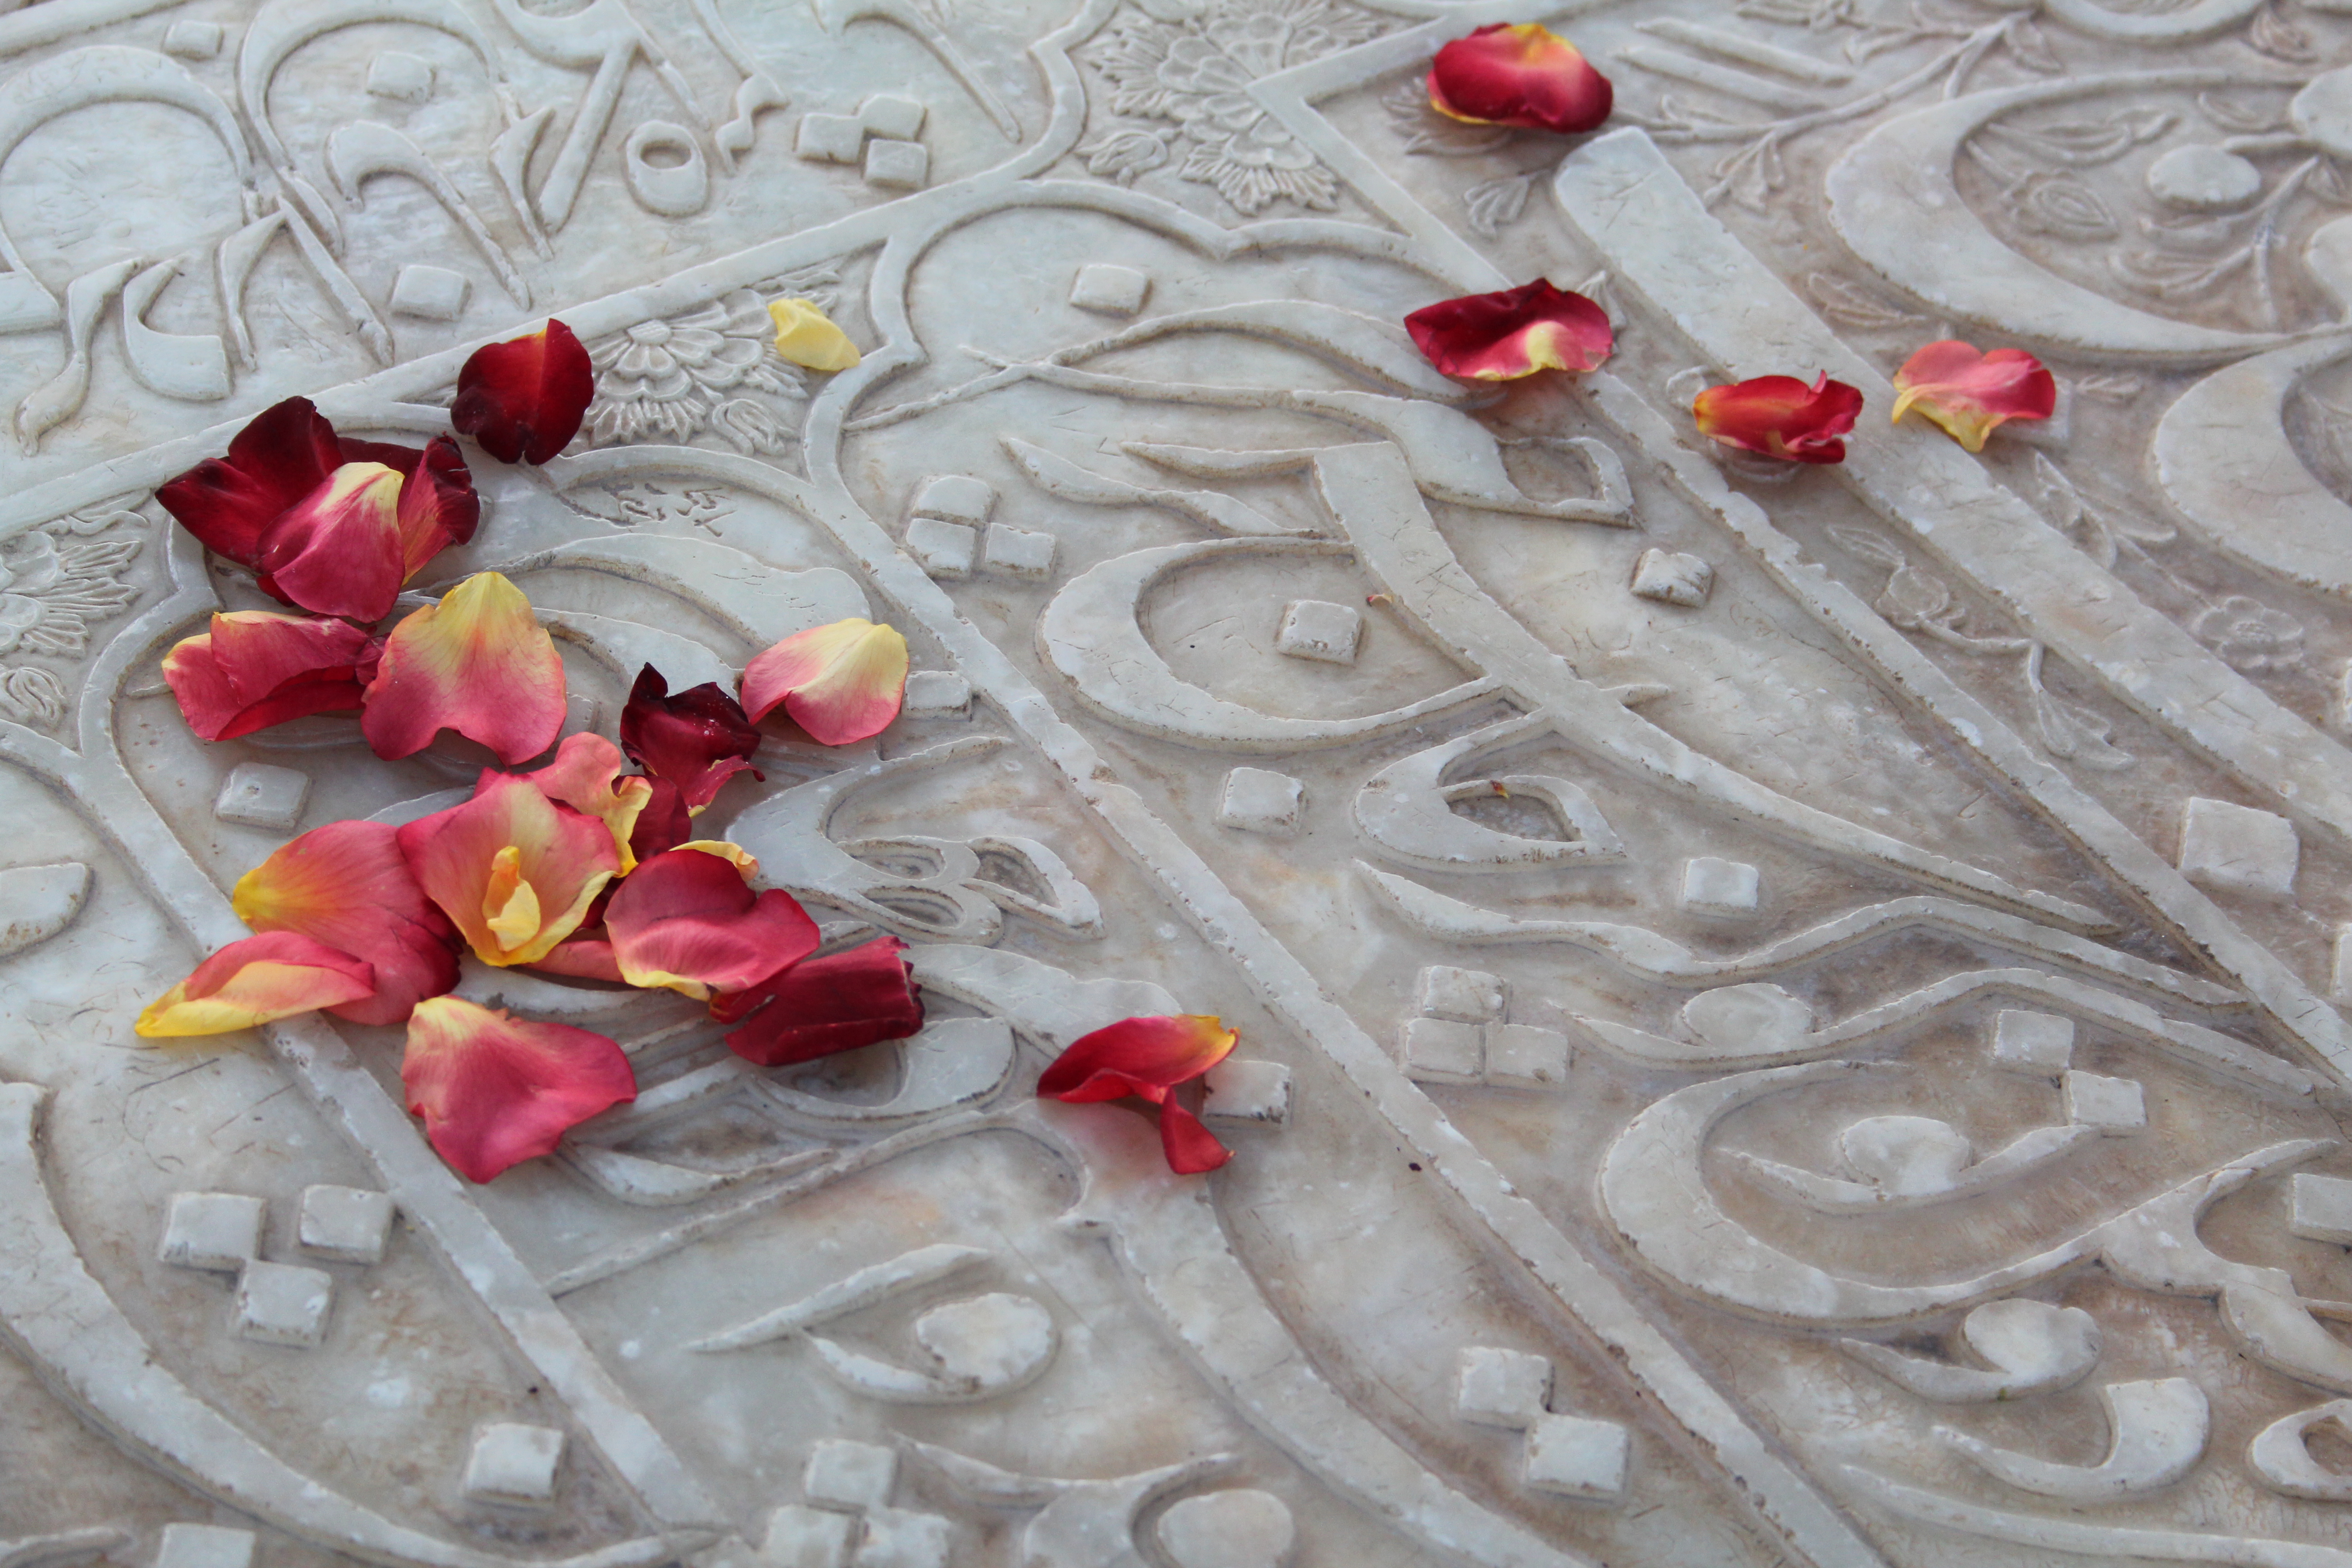 القبر الرخامي للشاعر حافظ وأوراق ورد أحمر نثرها عليه أحد الزوار – إيران.